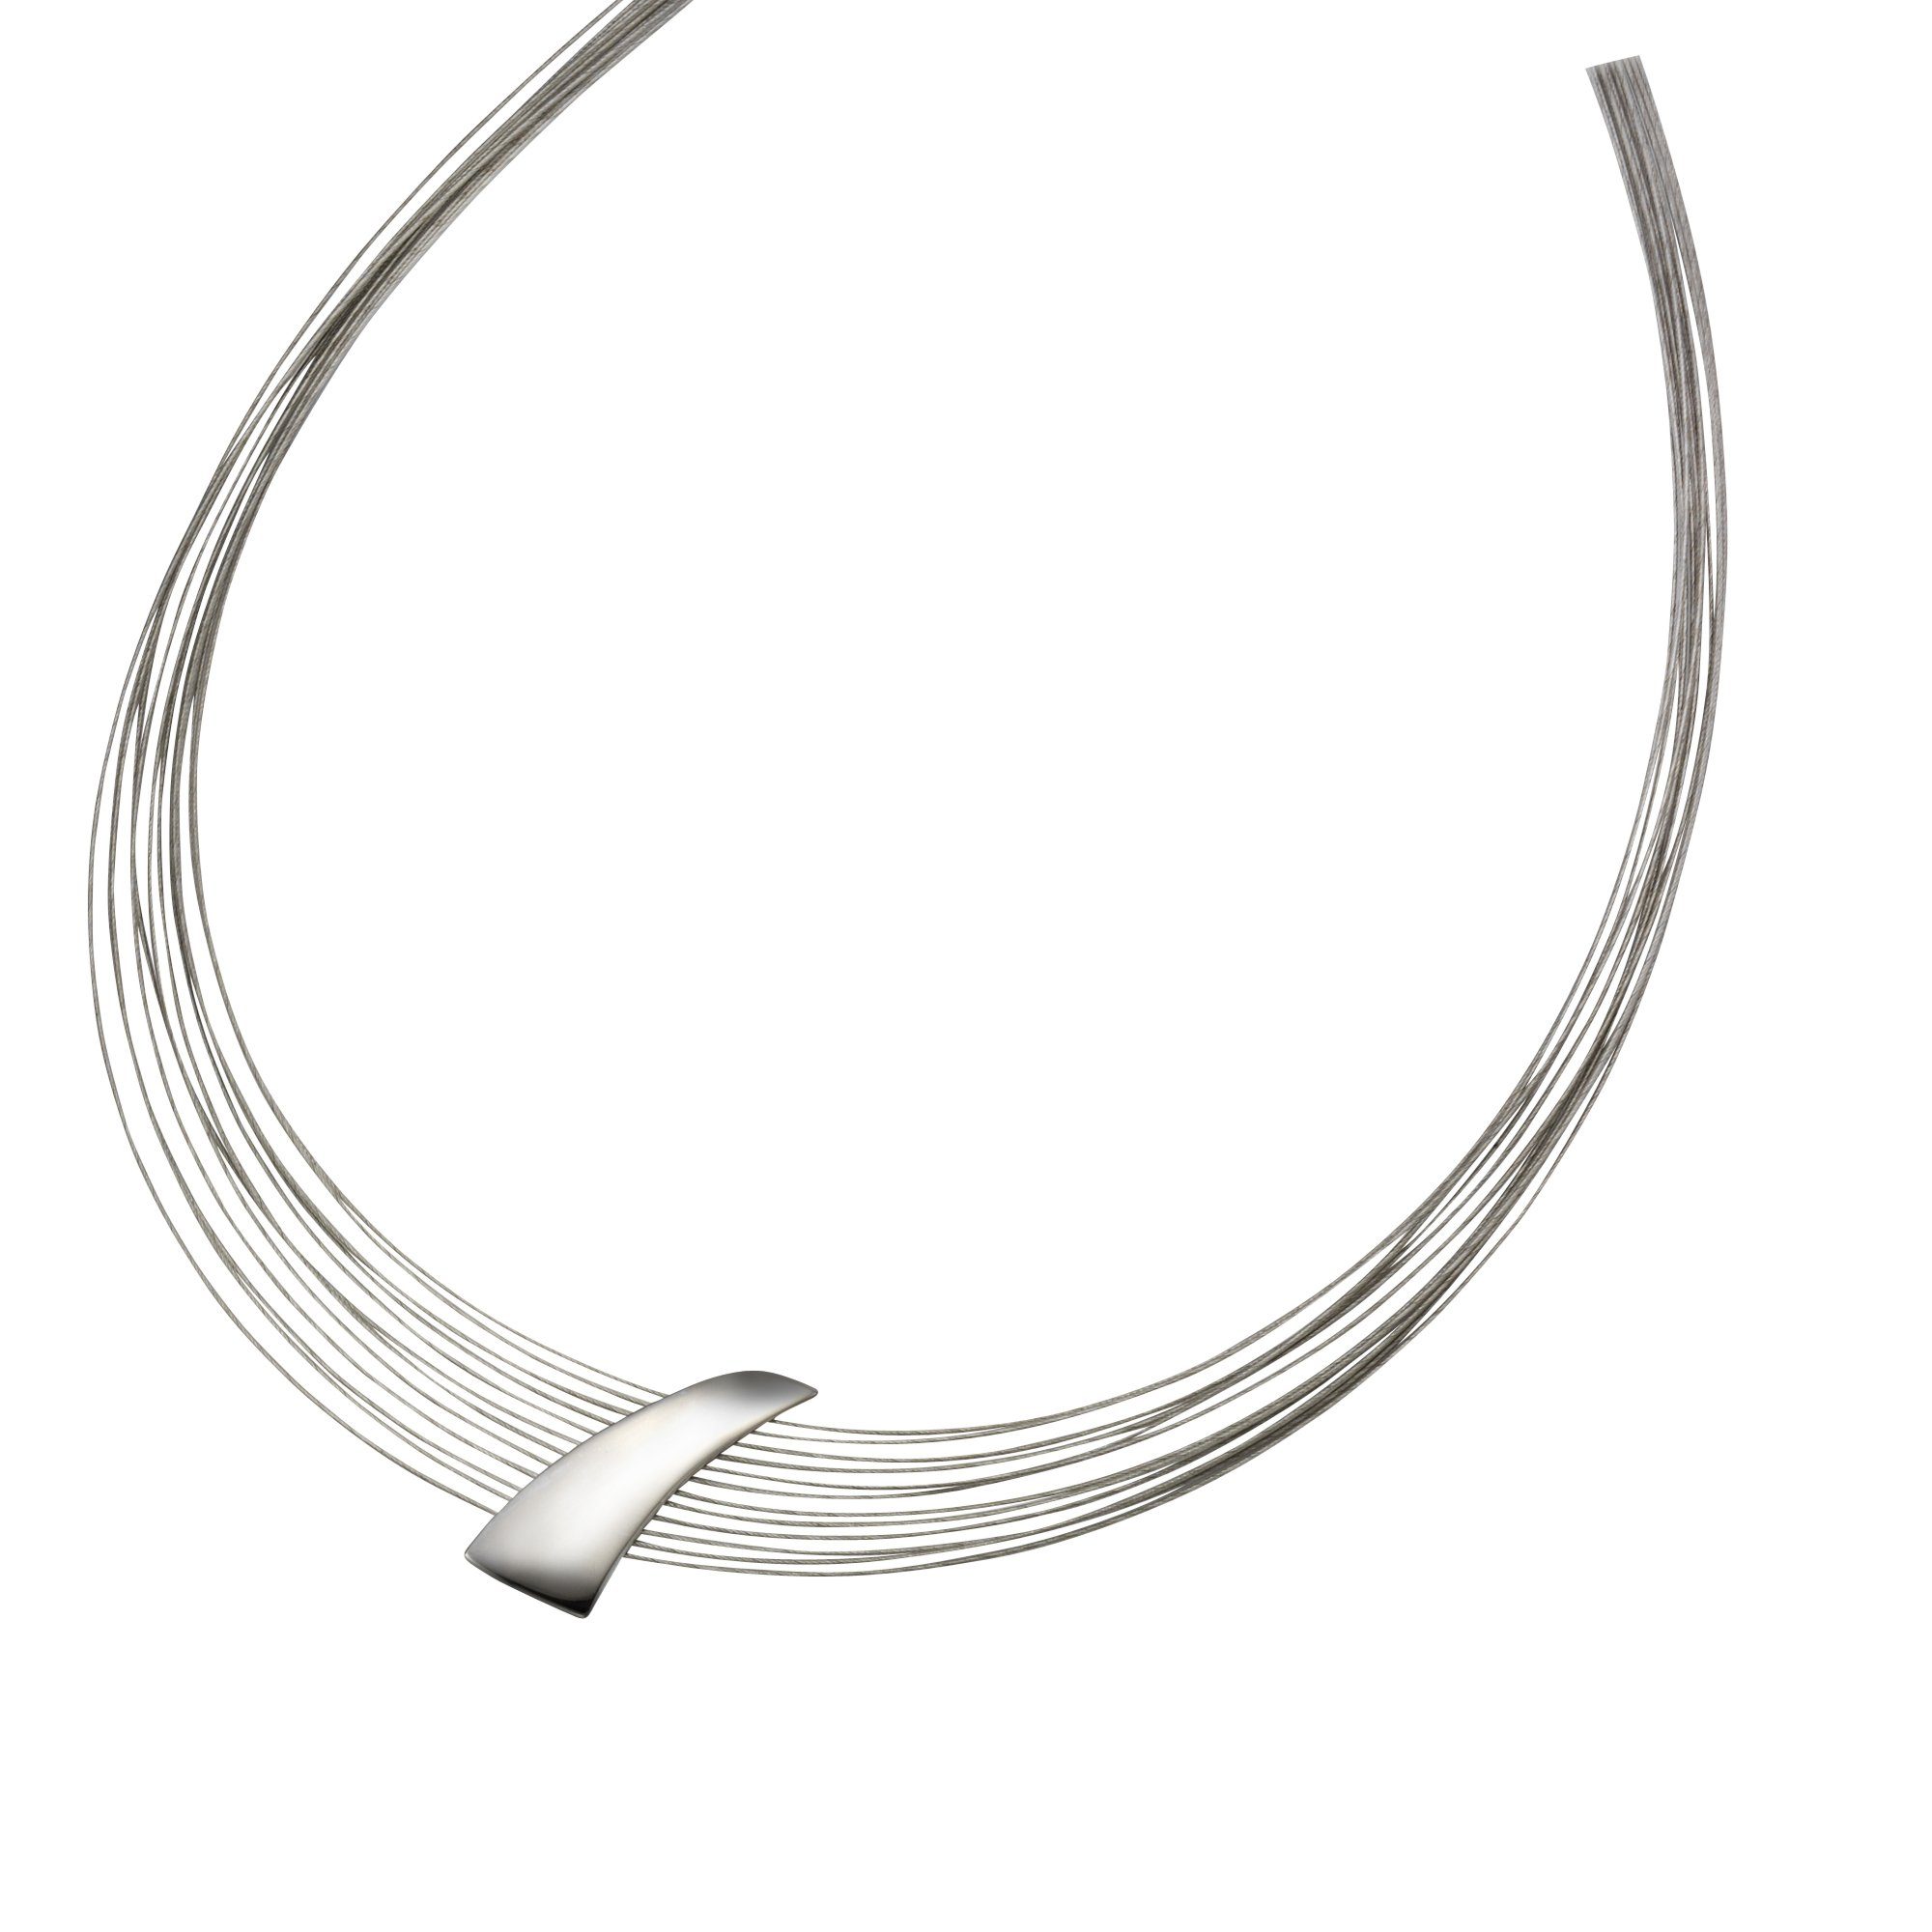 Unterschiedliche Längen Dicke 3 mm Venezianierkette Schwarz Rhodiniert 925 Sterling Silber Halskette für Mann